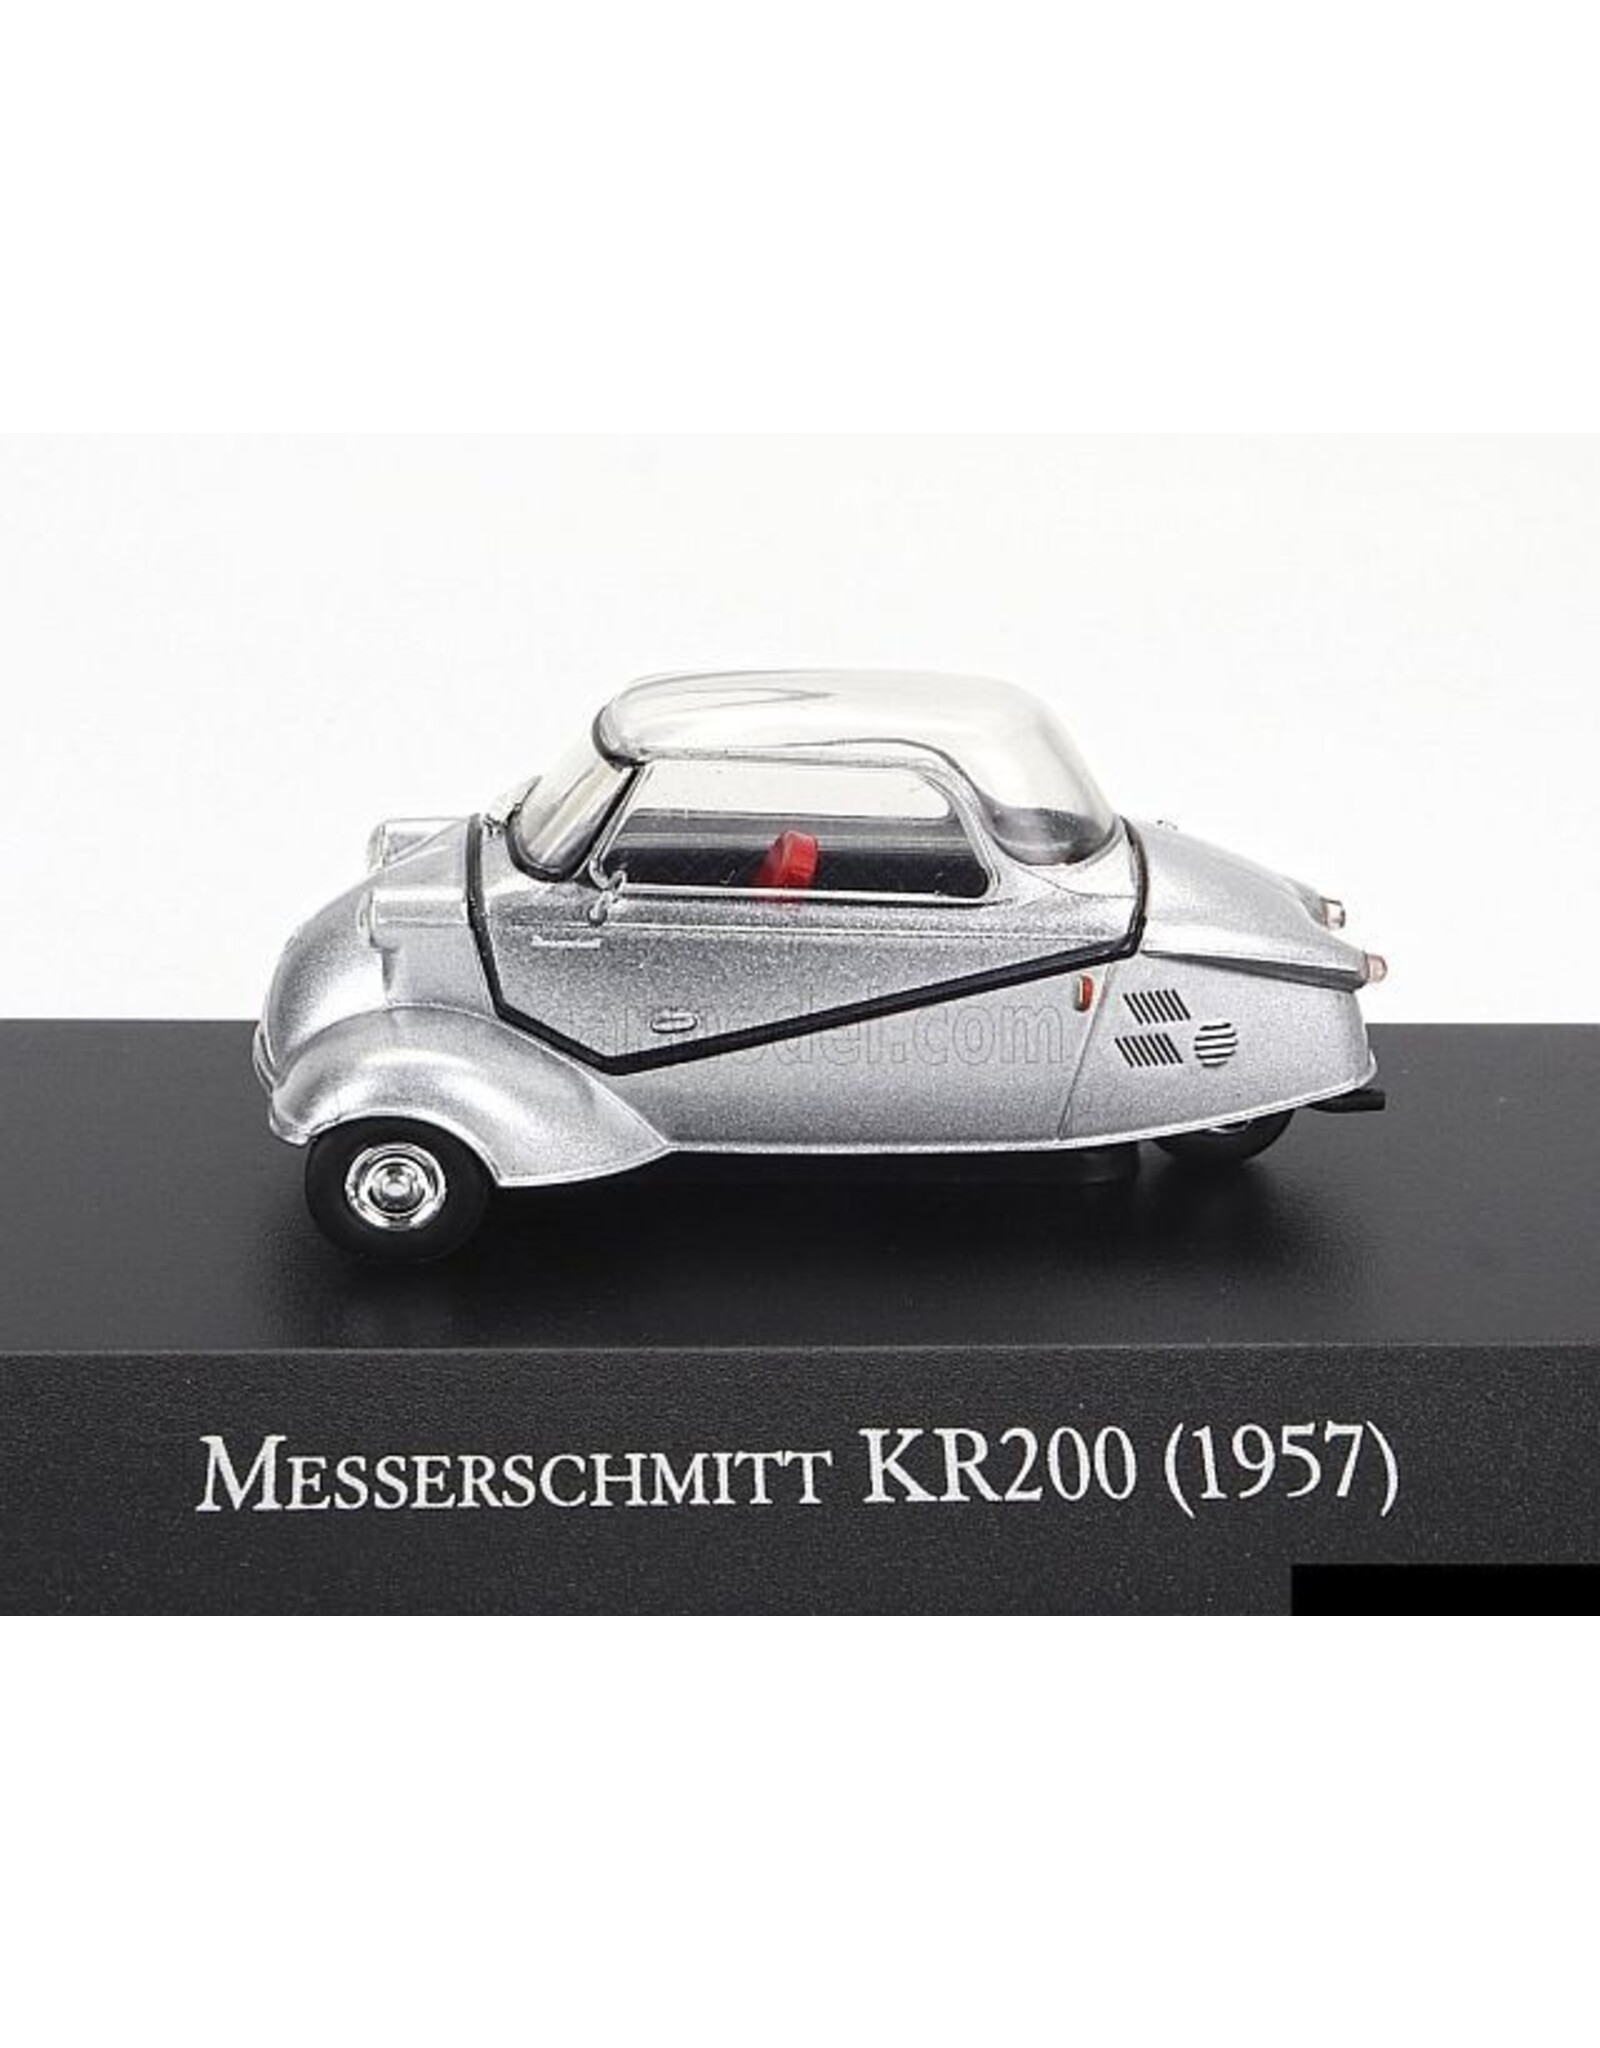 Messerschmitt Messerschmitt KR200(1957)